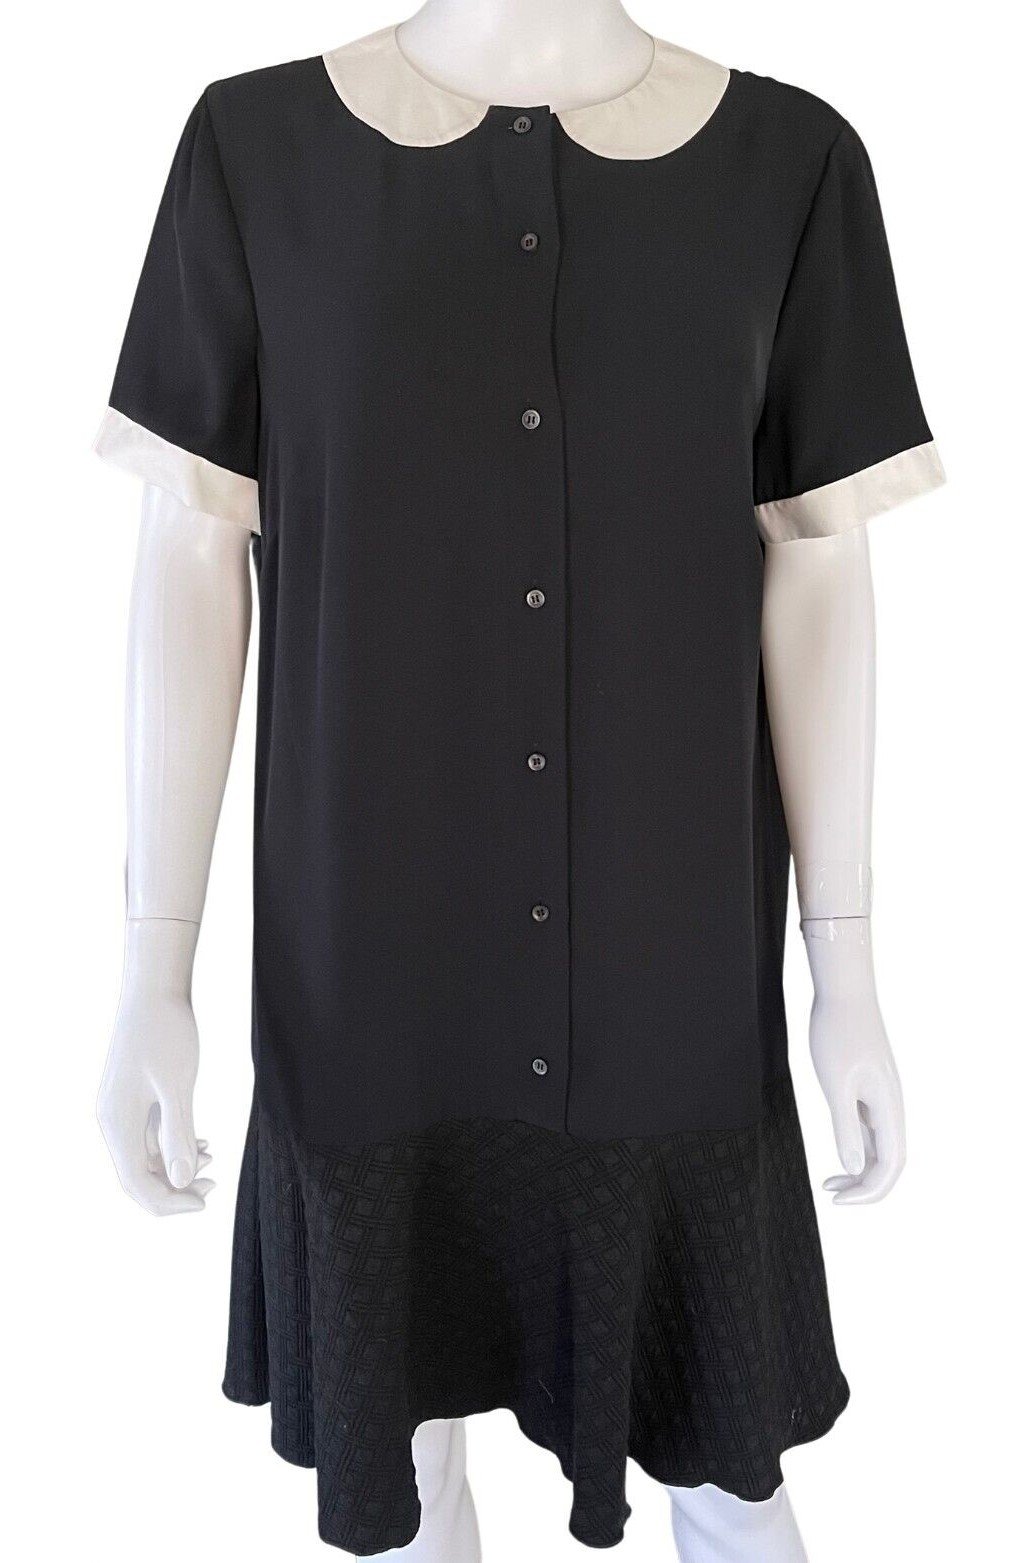 M Missoni Drop-Waist Shirt Dress in Black.jpg